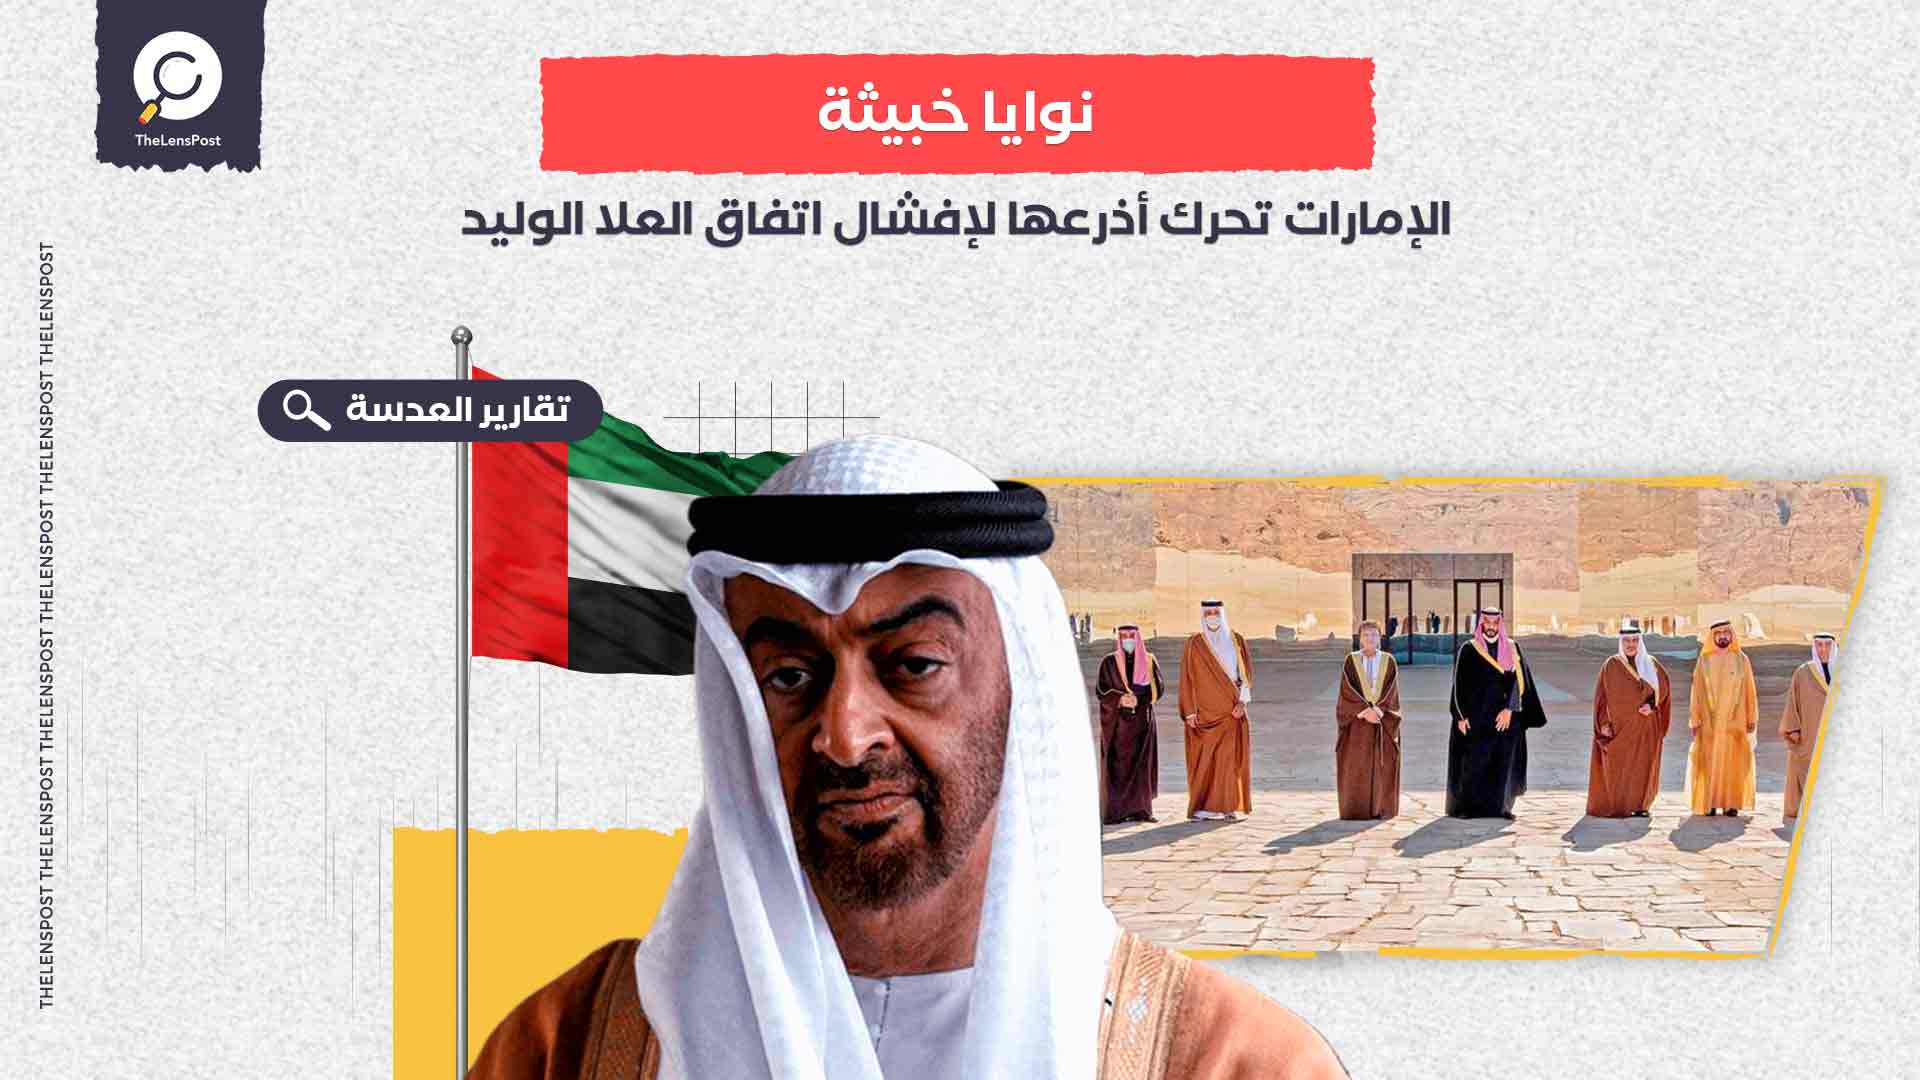 تشكيك بالمصالحة وإساءة لأمير الكويت.. الإمارات تحرك أذرعها لإفشال اتفاق العلا الوليد